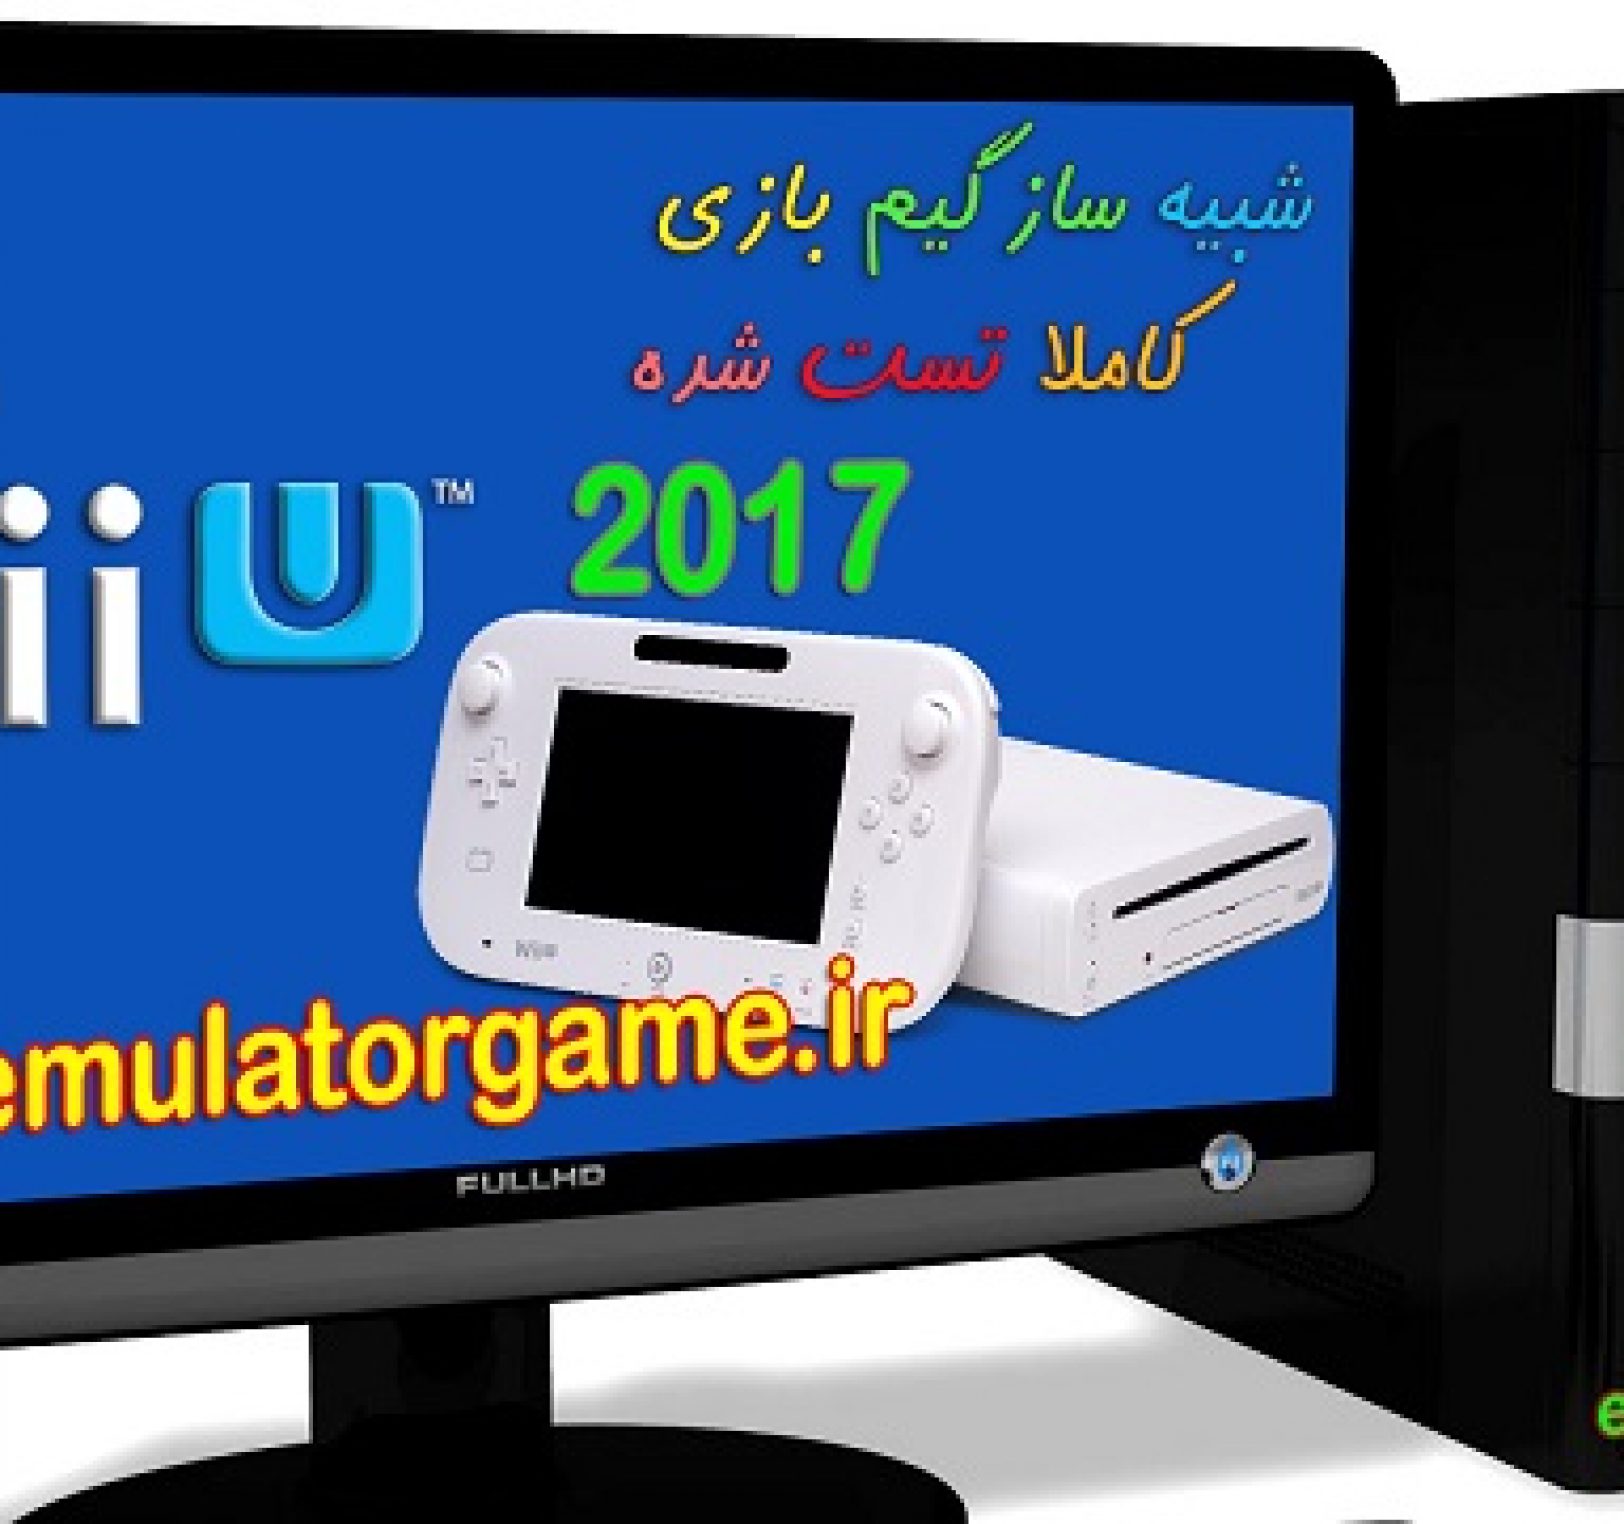 دانلود شبیه ساز Emulator Wii-U کامپیوتر 2017 [جدید]